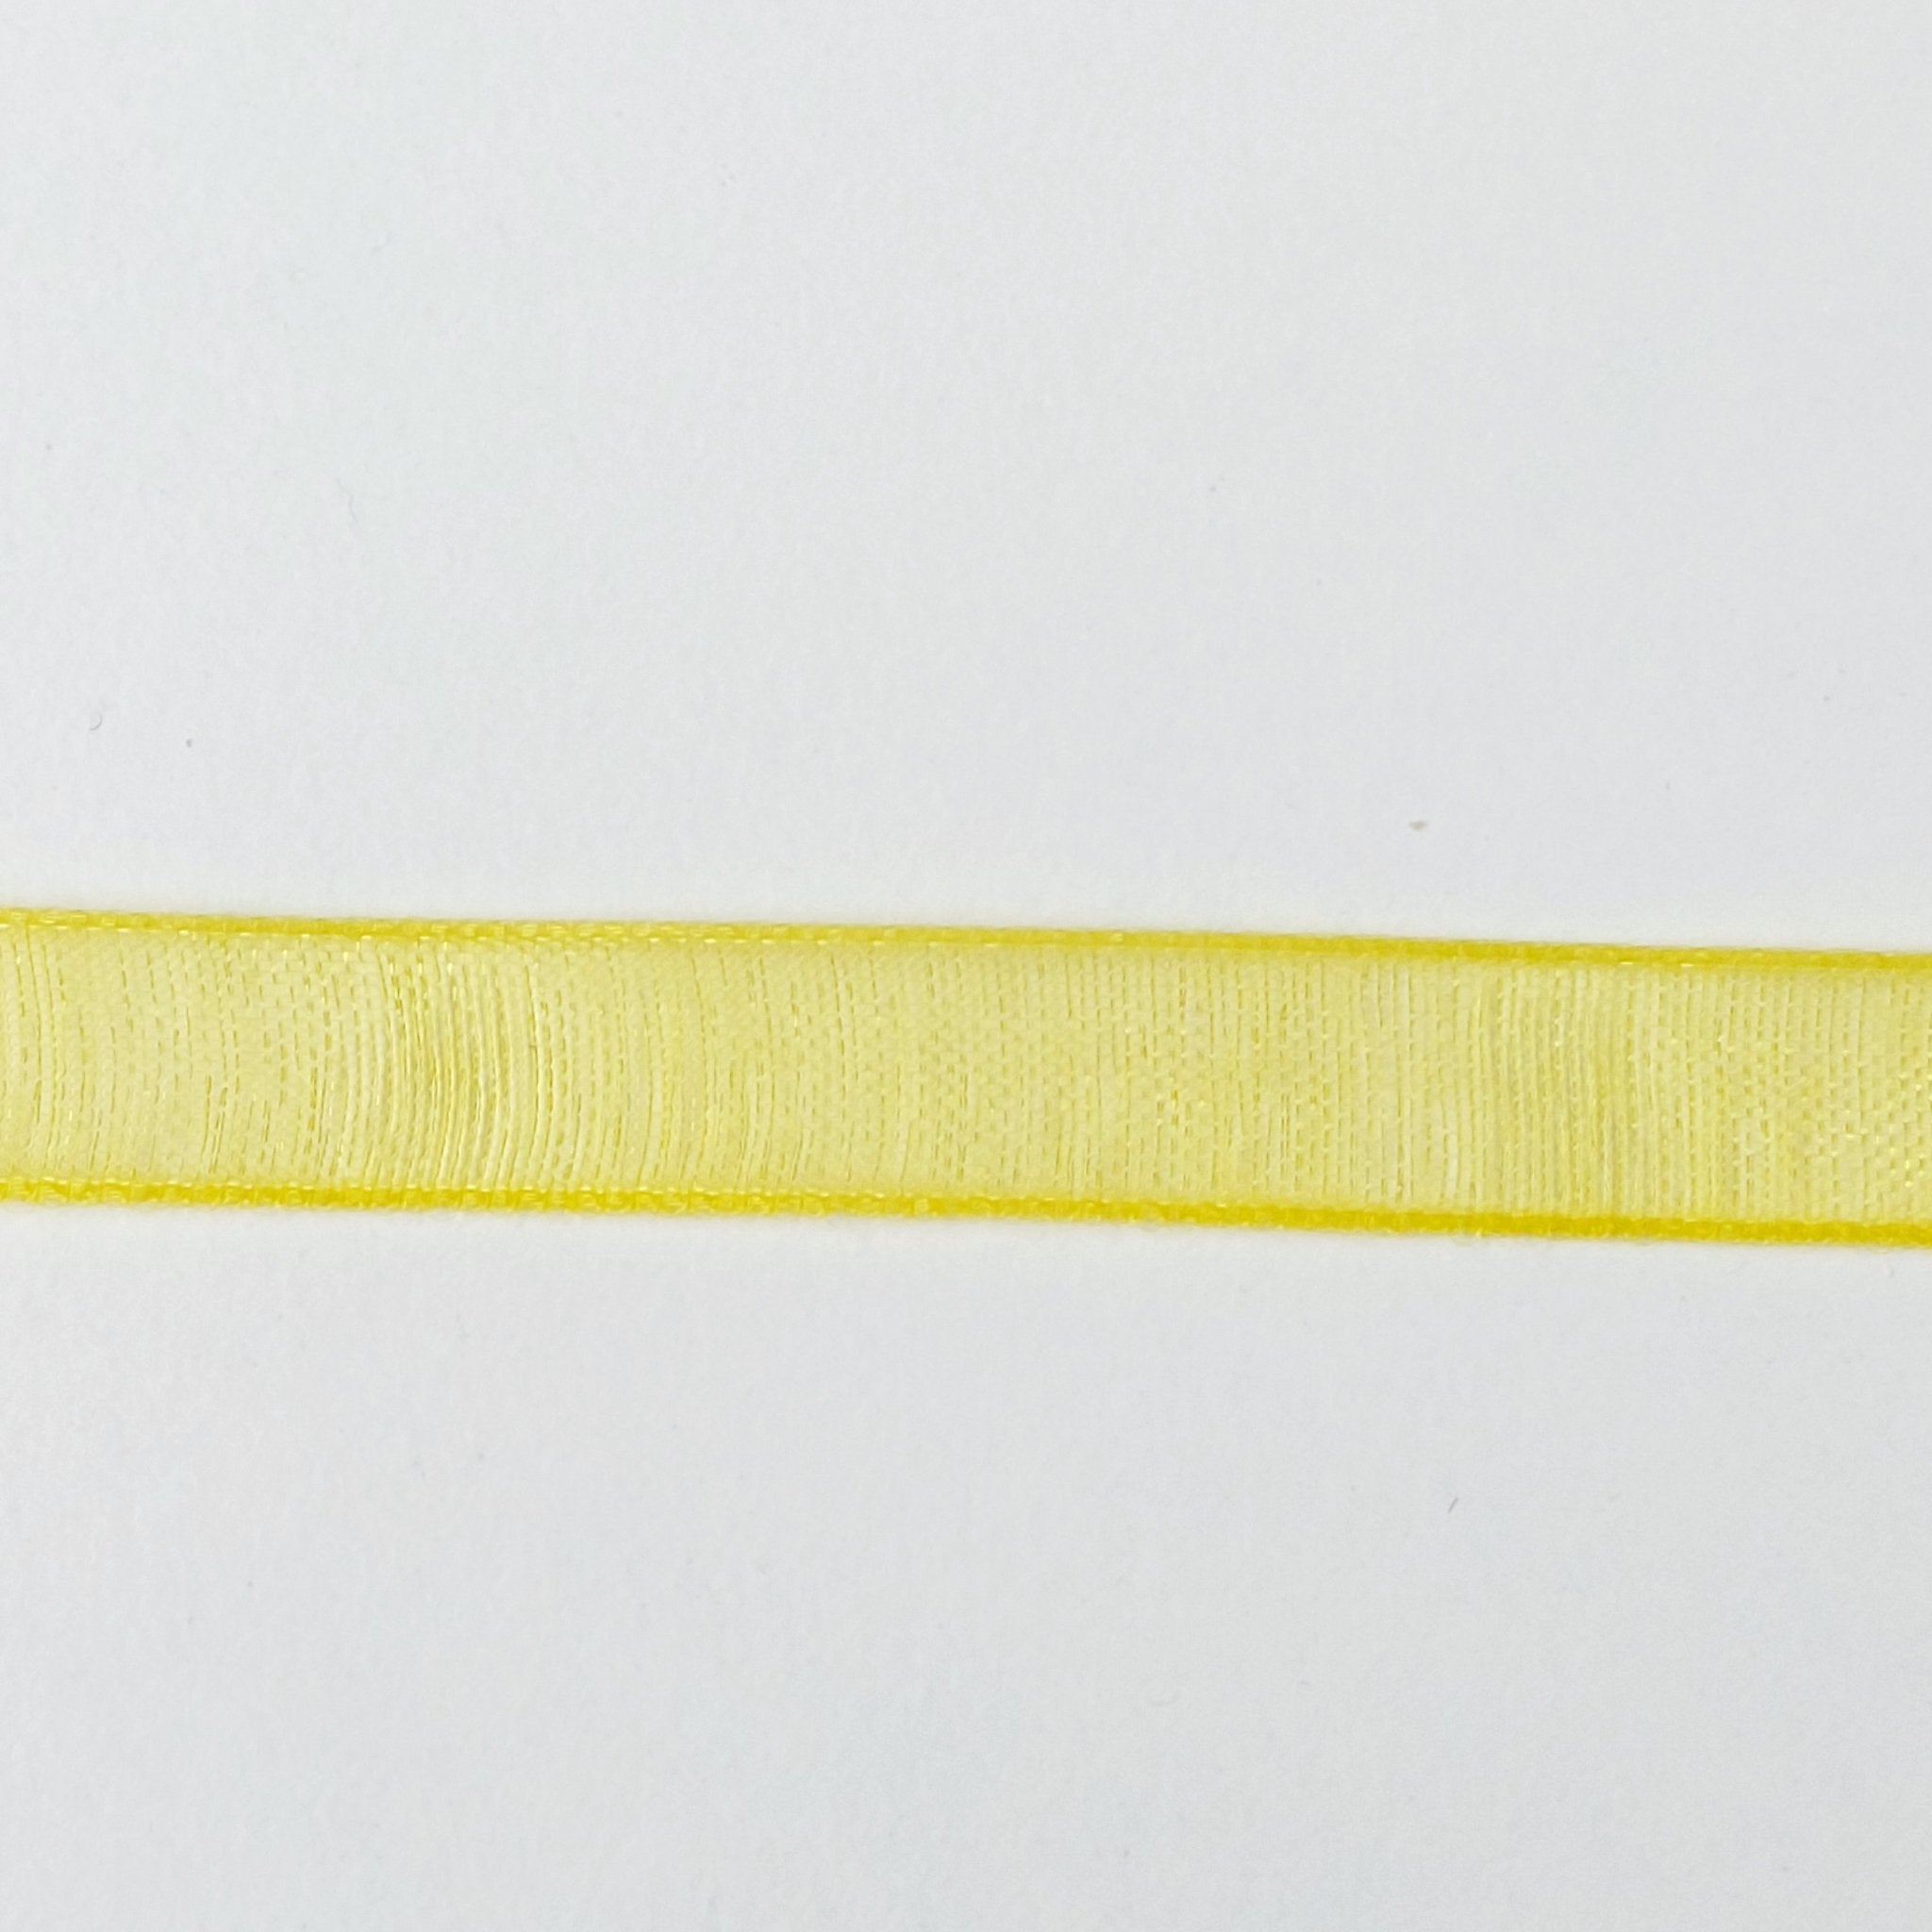 1/8 Inch Organdy ribbon 'Yellow' - Crafty Divas